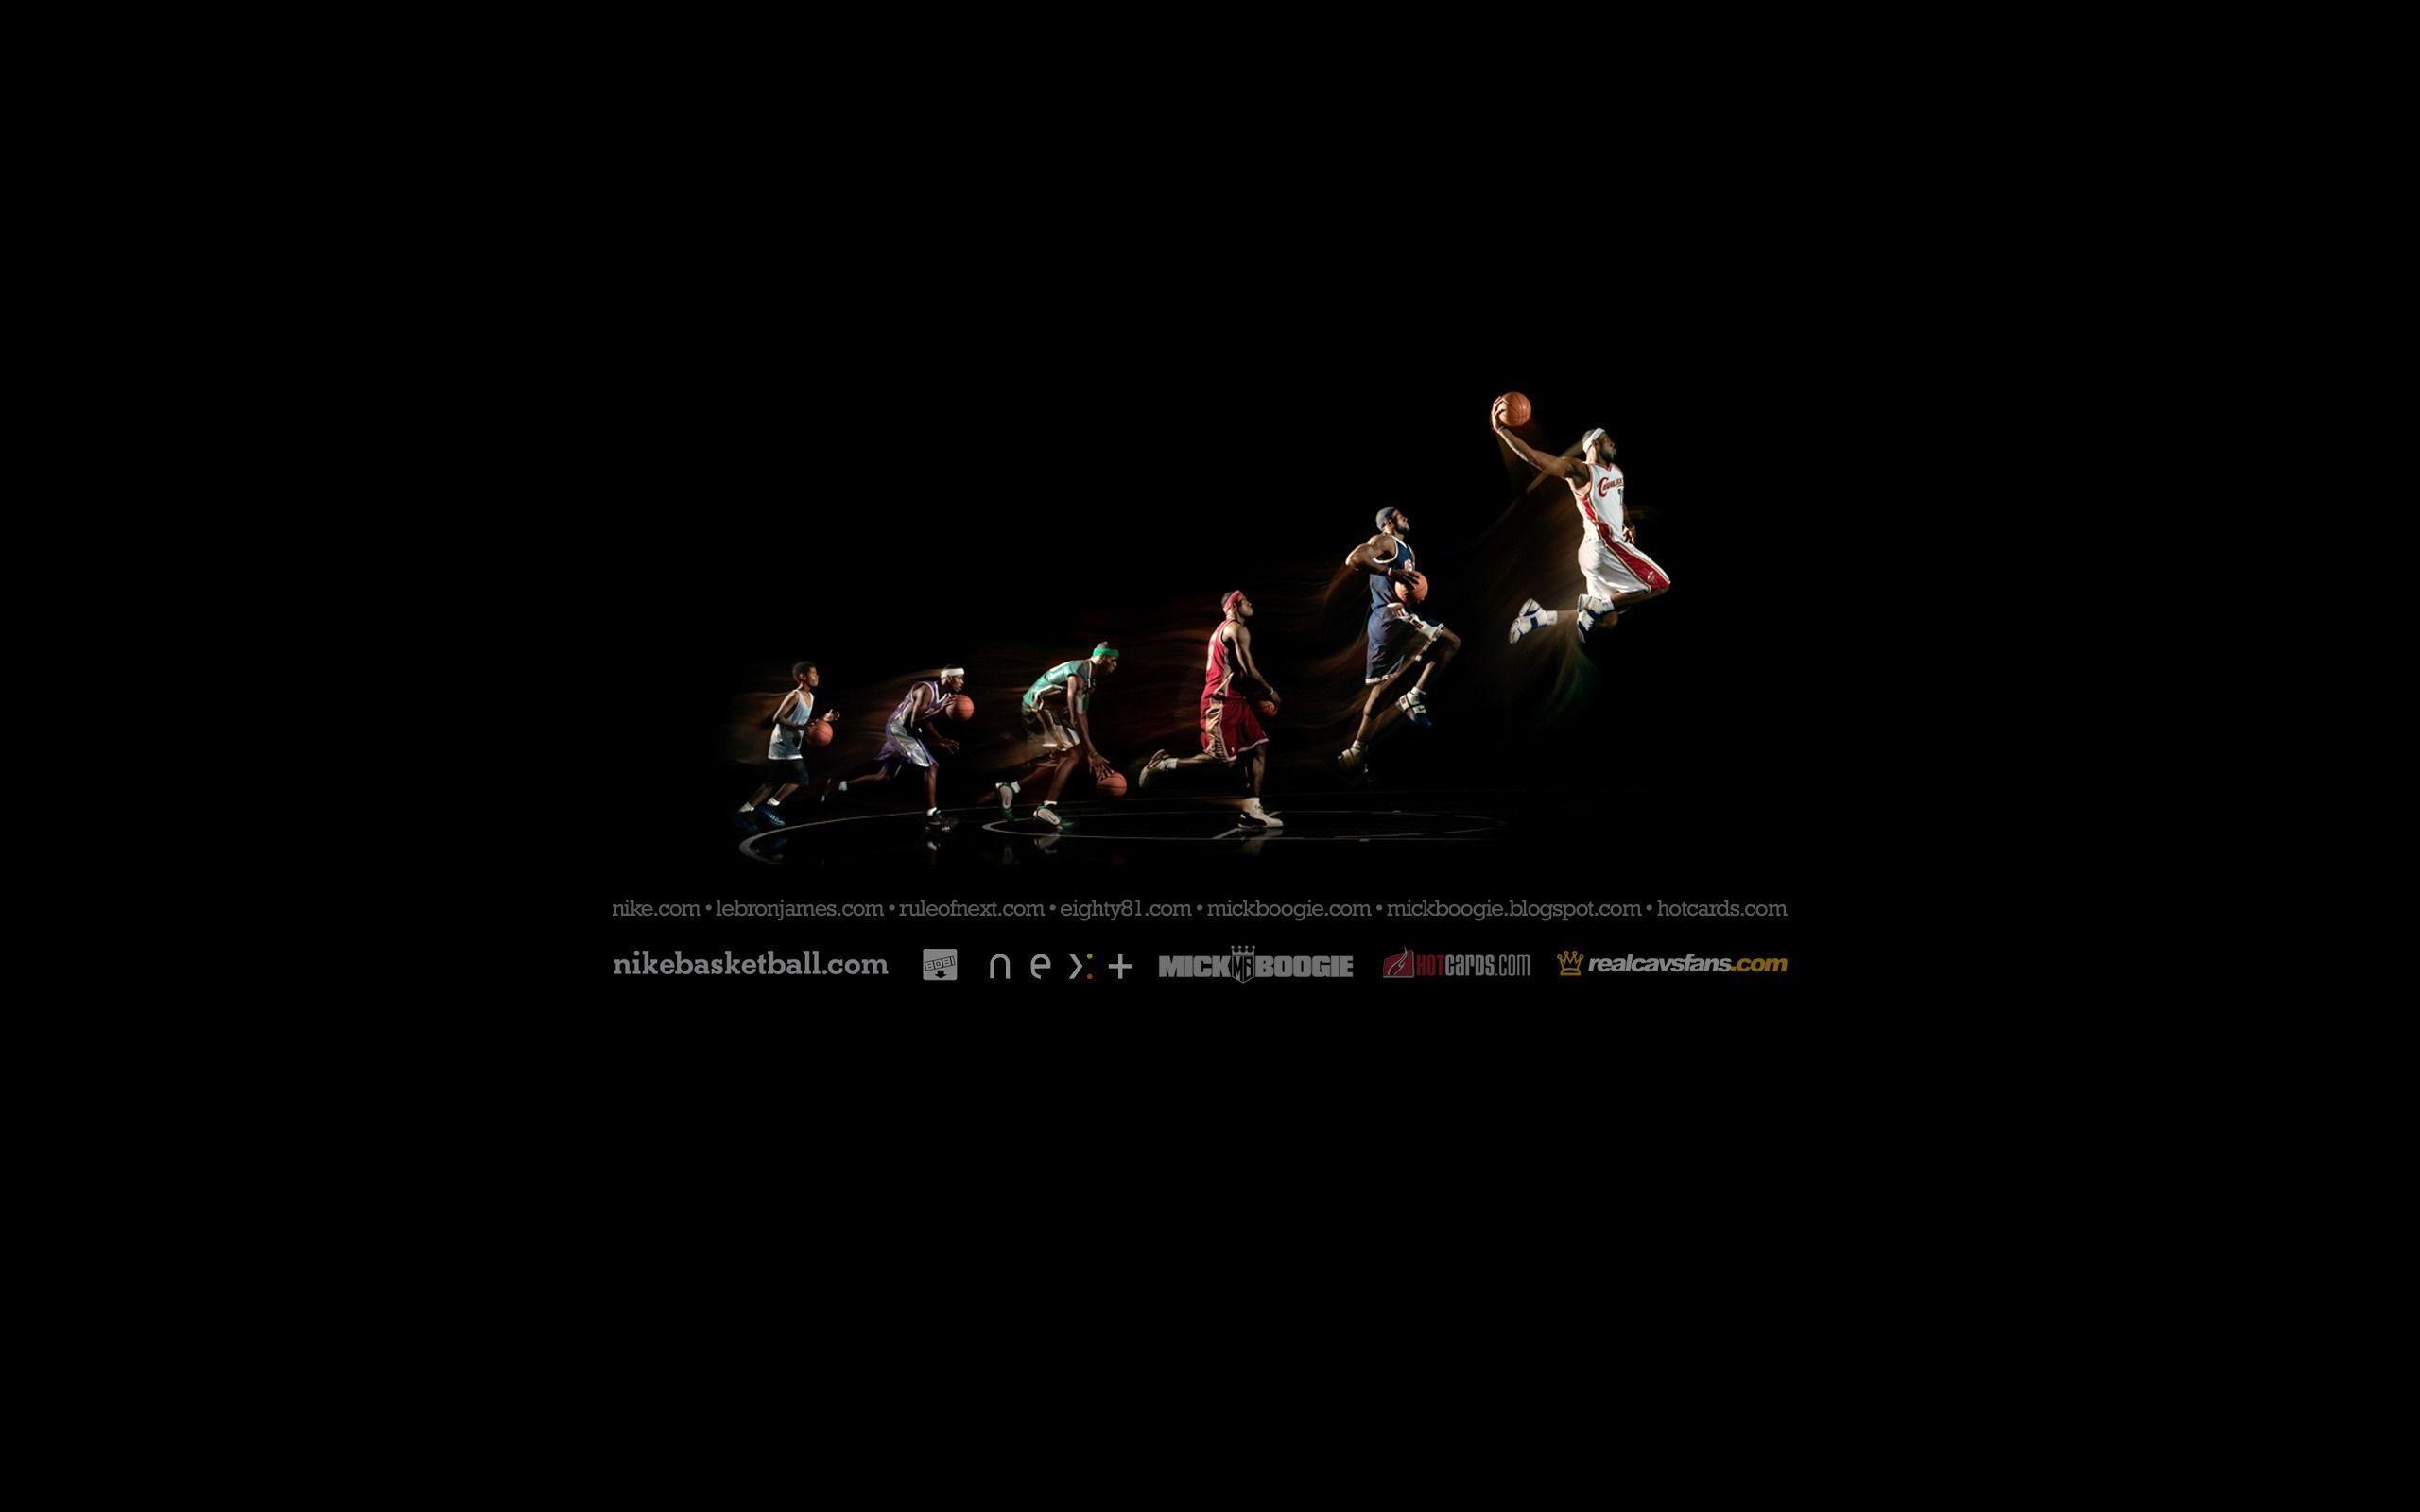 Wallpaper For > Basketball Wallpaper For Desktop HD